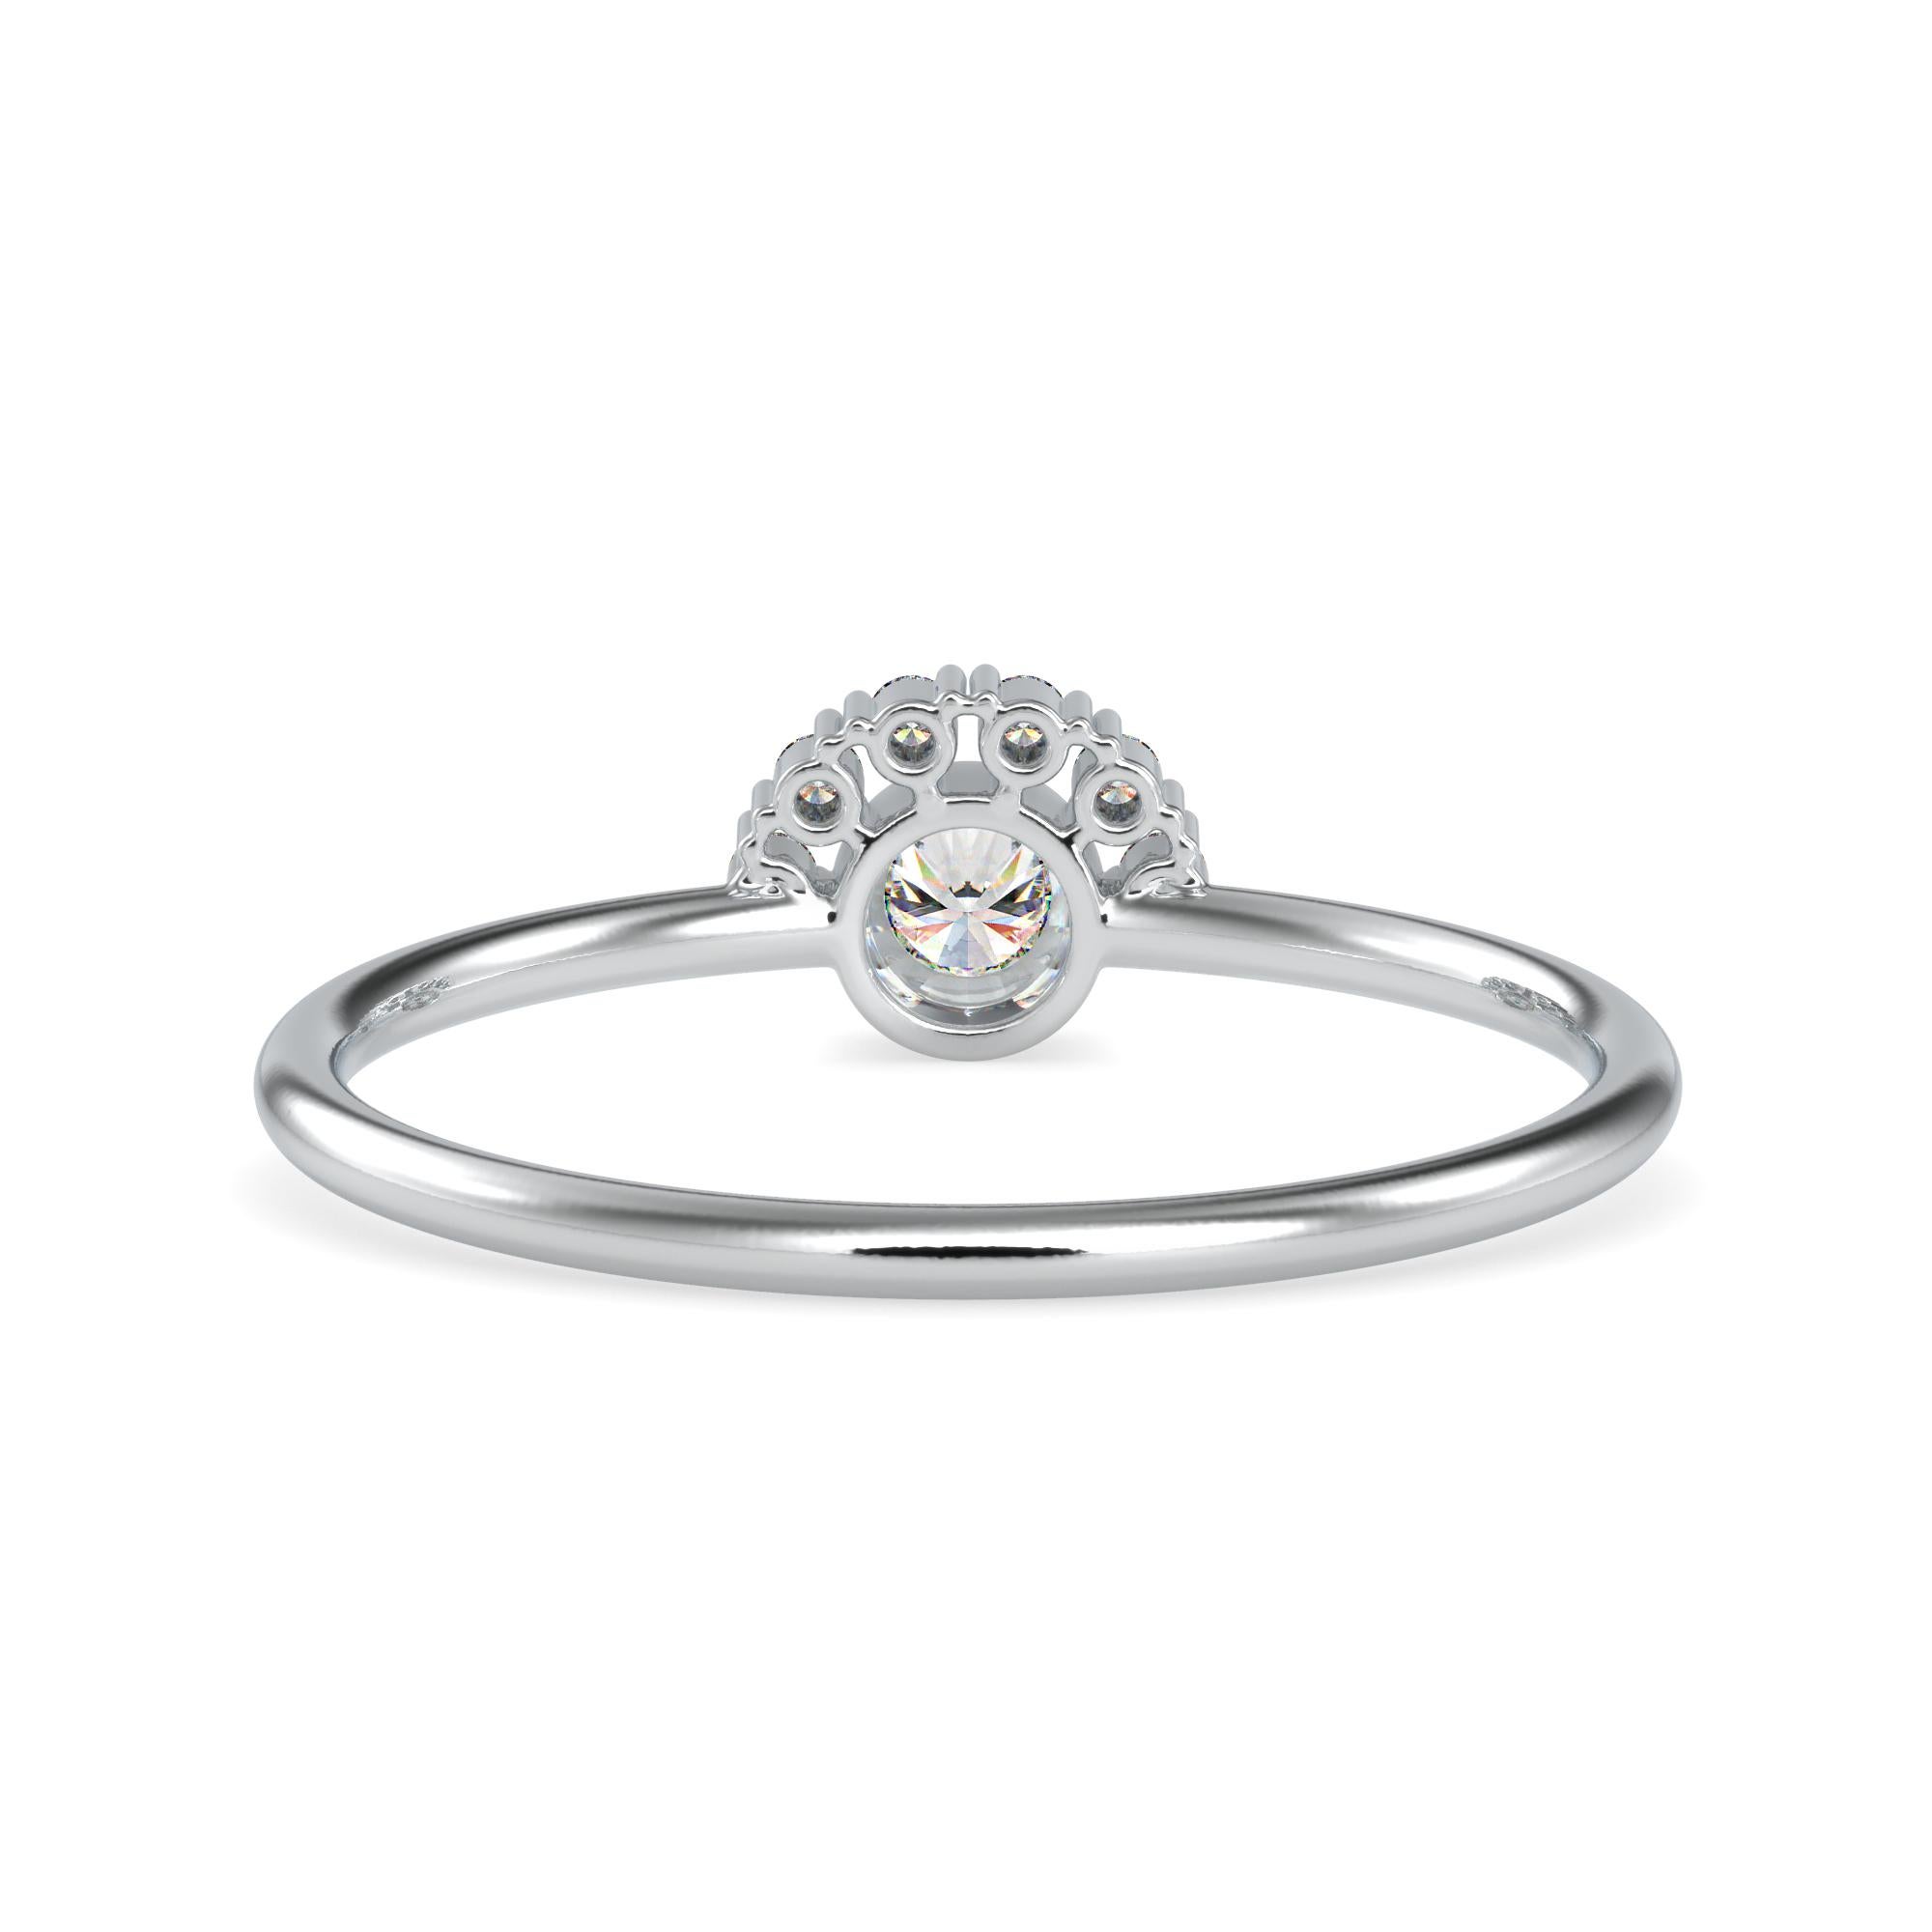 0.13 Carat Diamond 14K White Gold Ring
Stamped: 14K
Total Ring Weight: 1.3 Grams
Diamond Weight: 0.04 Carat (F-G Color, VS2-SI1 Clarity) 1.2 Millimeters
Diamond Weight: 0.09 Carat (F-G Color, VS2-SI1 Clarity) 2.9 Millimeters 
Diamond Quantity: 7